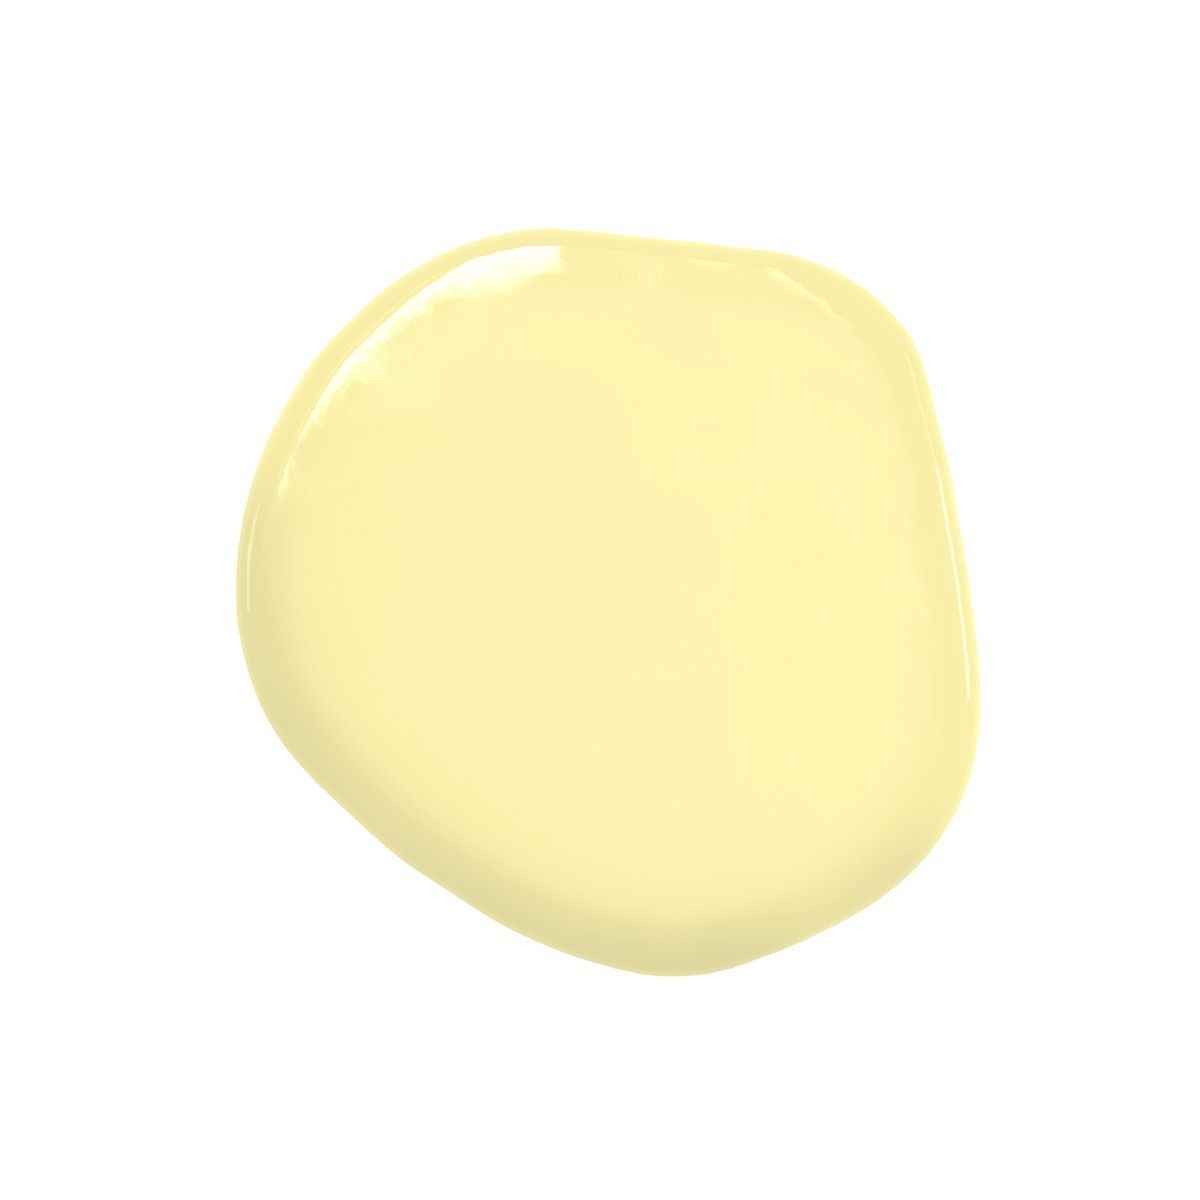 Colorant alimentaire liposoluble jaune clair Lemon 20 ml - Colour Mill